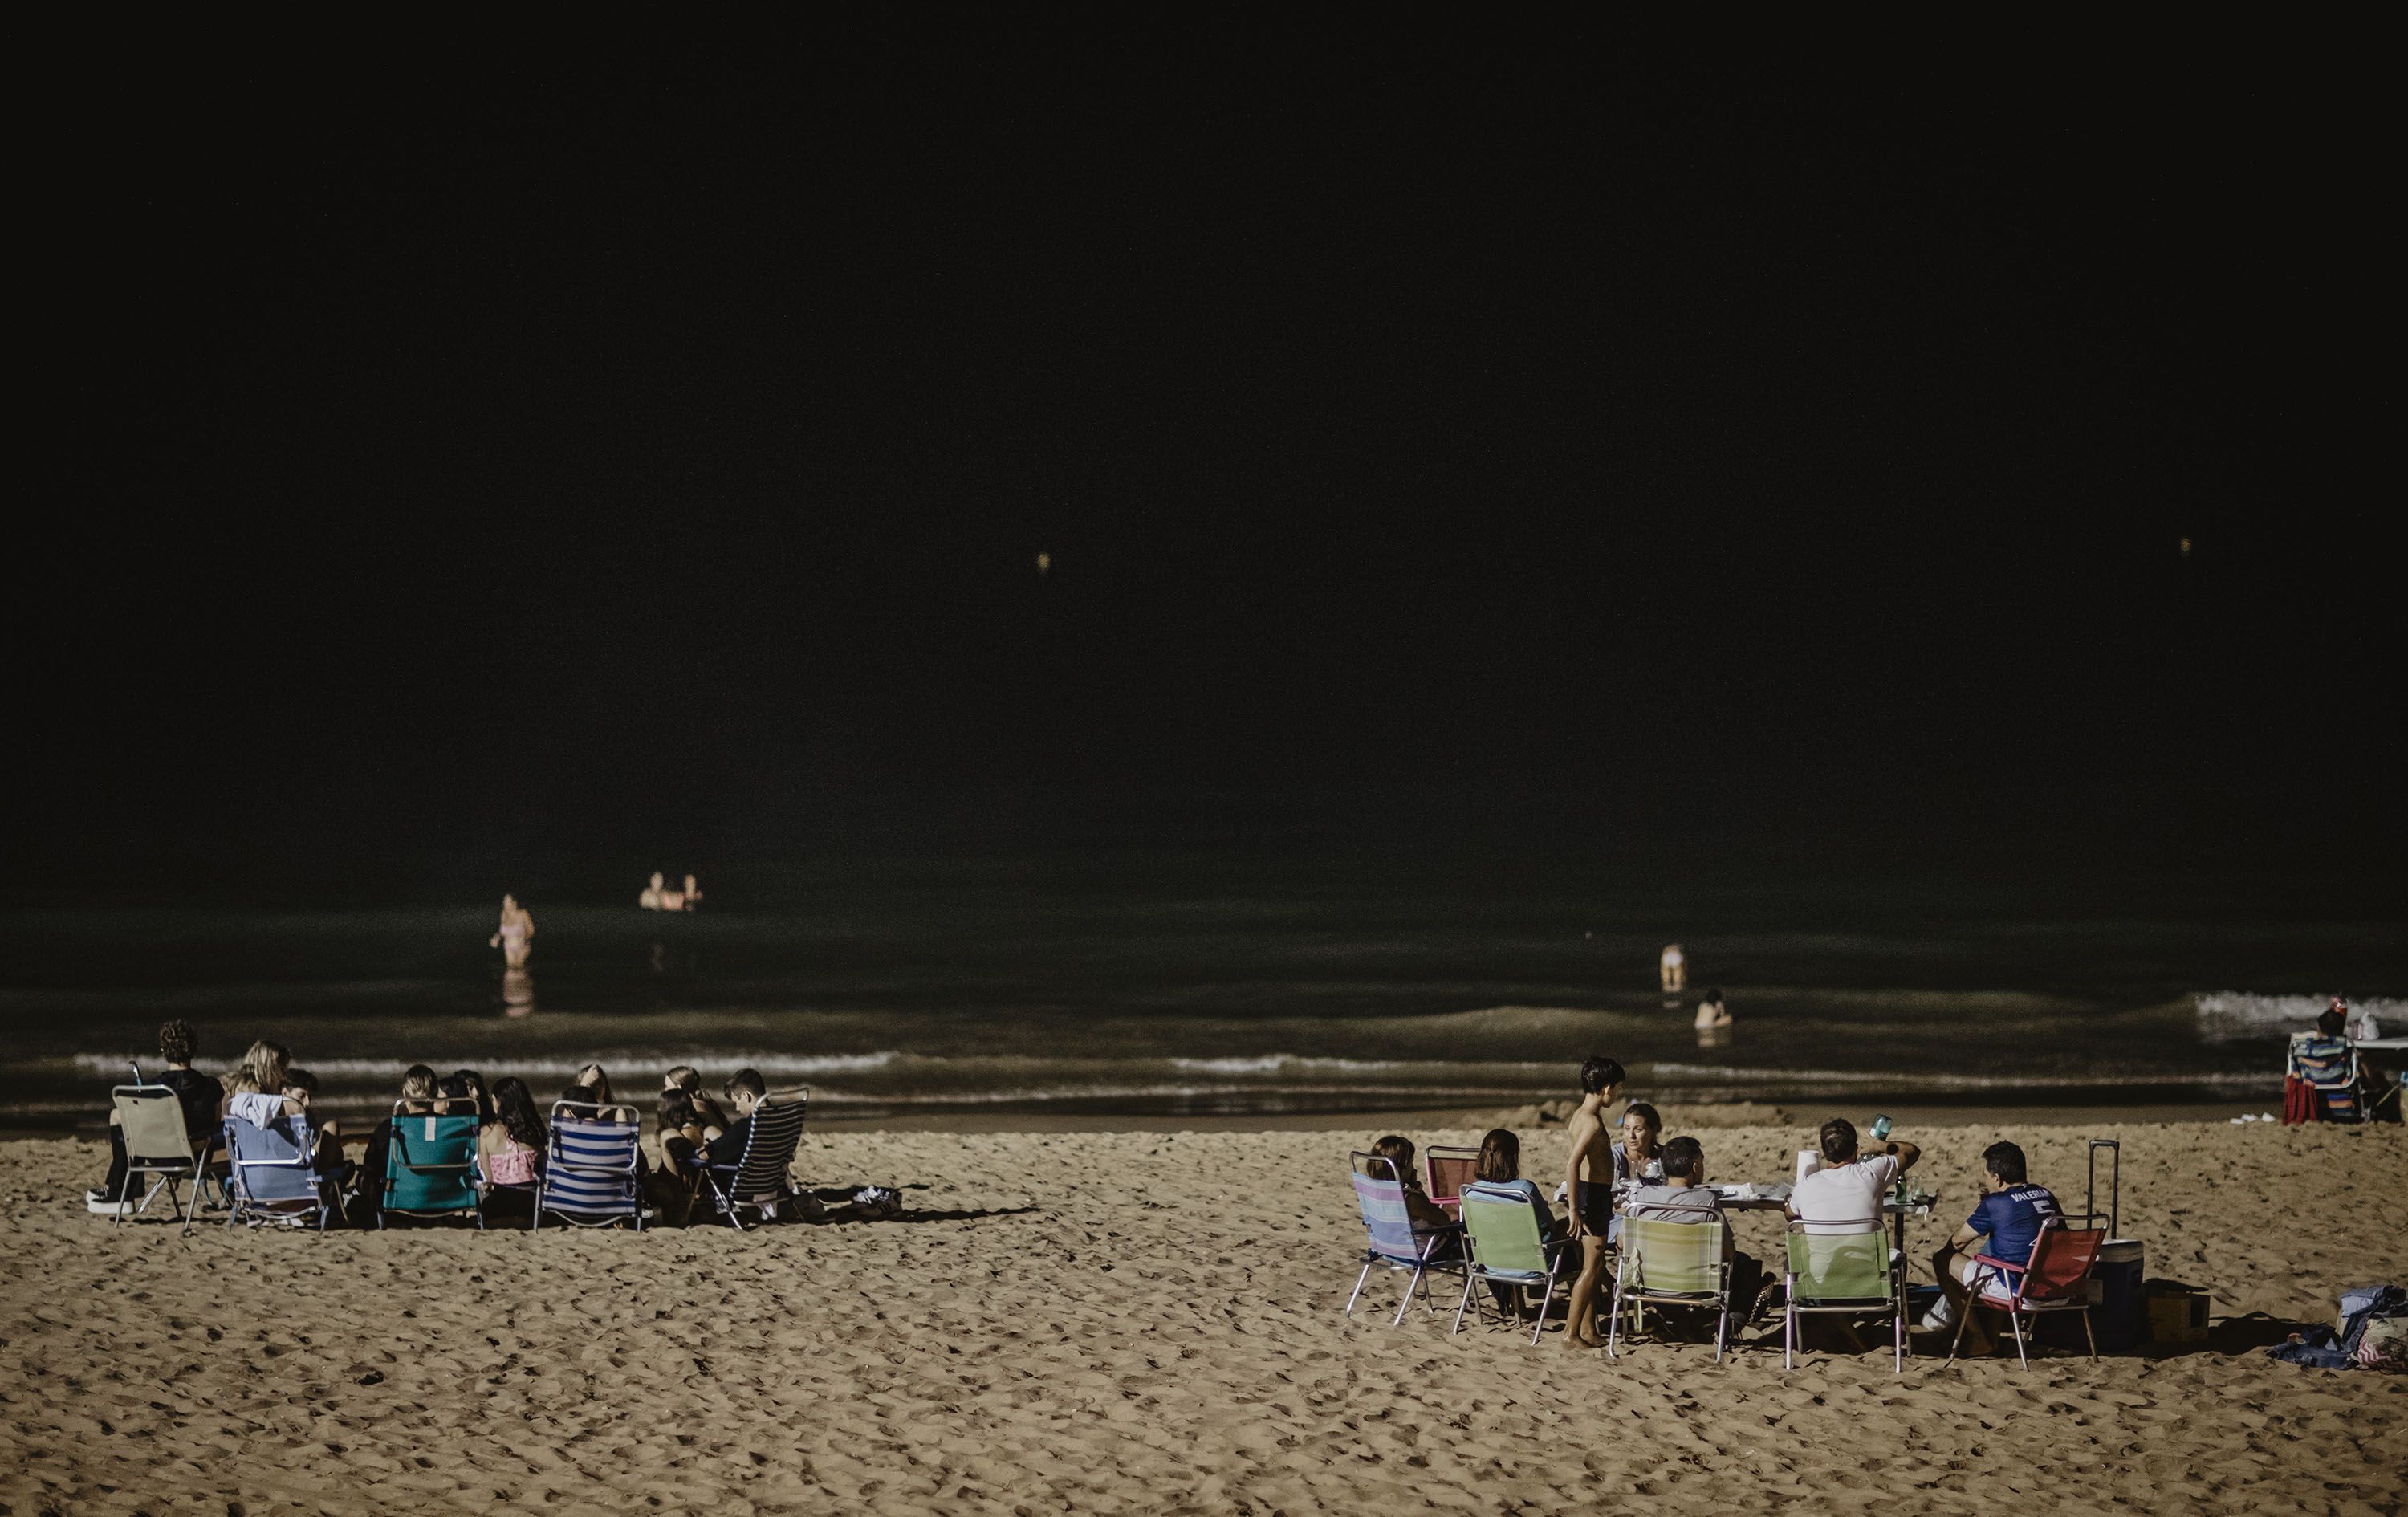 Gran ambiente, este pasado sábado por la noche, en la playa de Regla en Chipiona. Familias cenando casi en la orilla para combatir el calor.